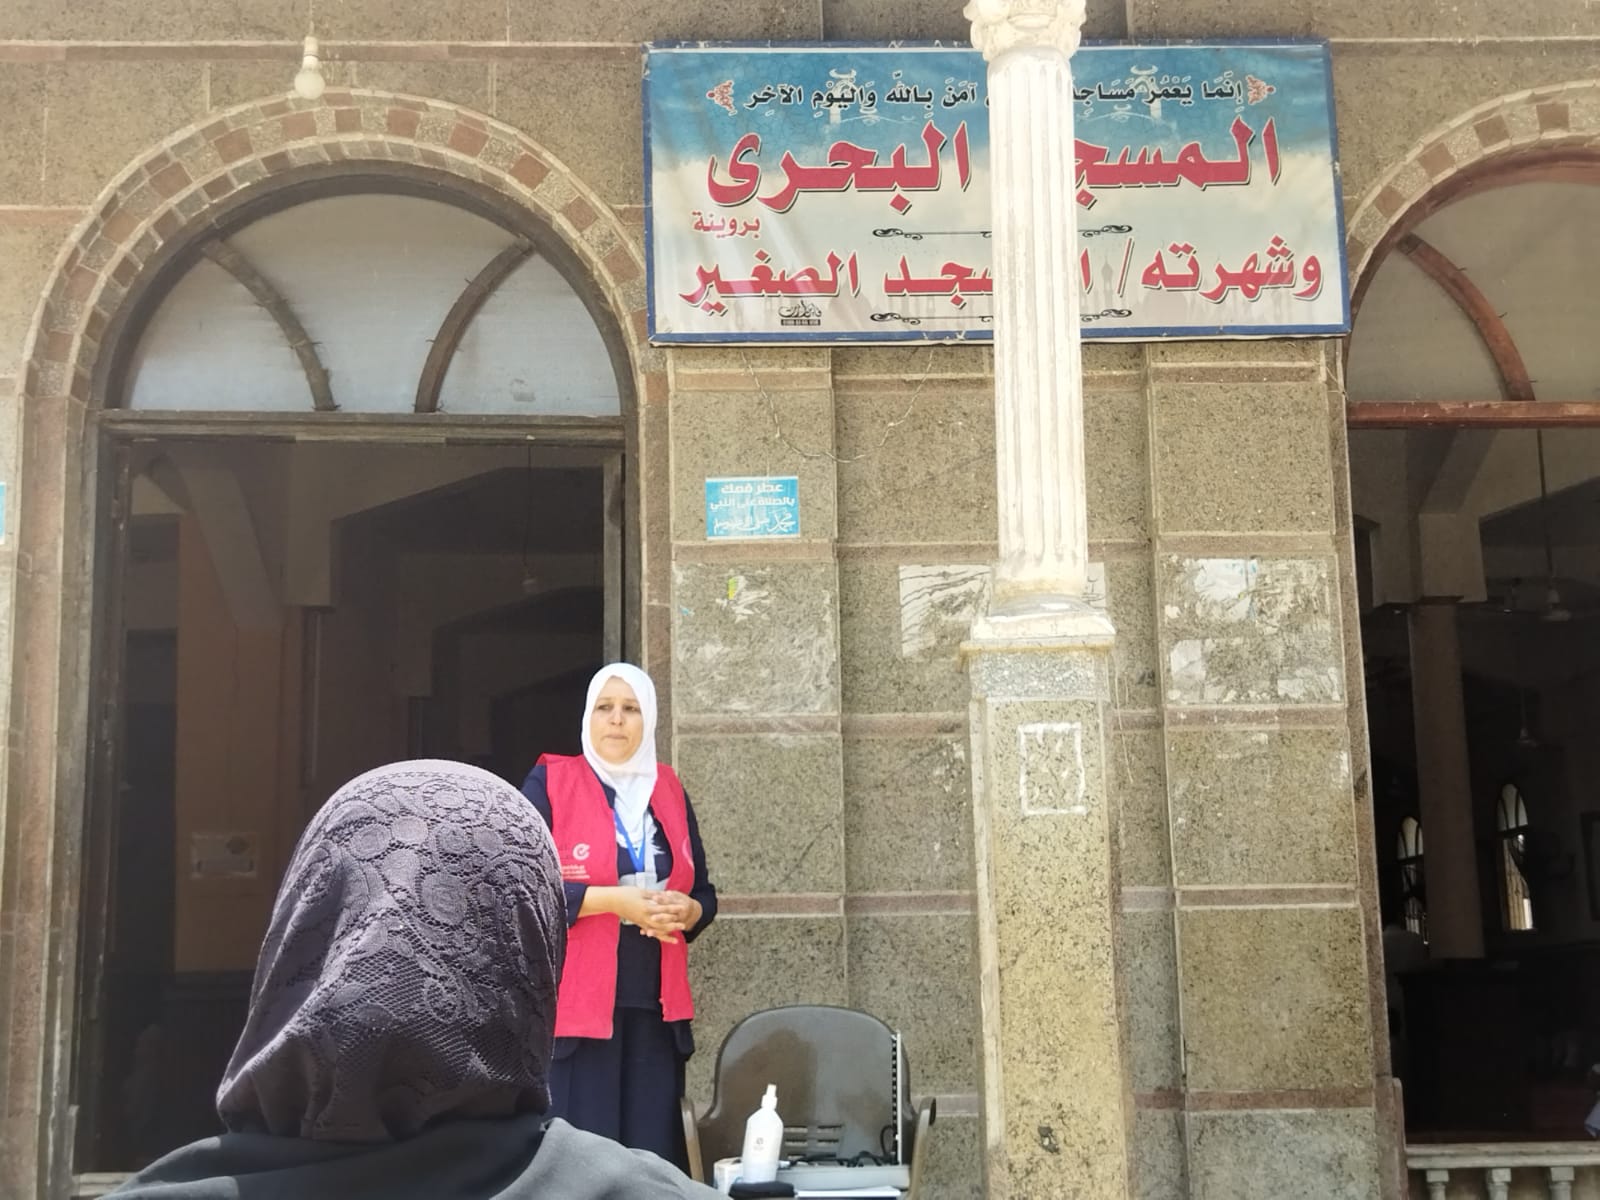 الكشف الطبي امام مسجد